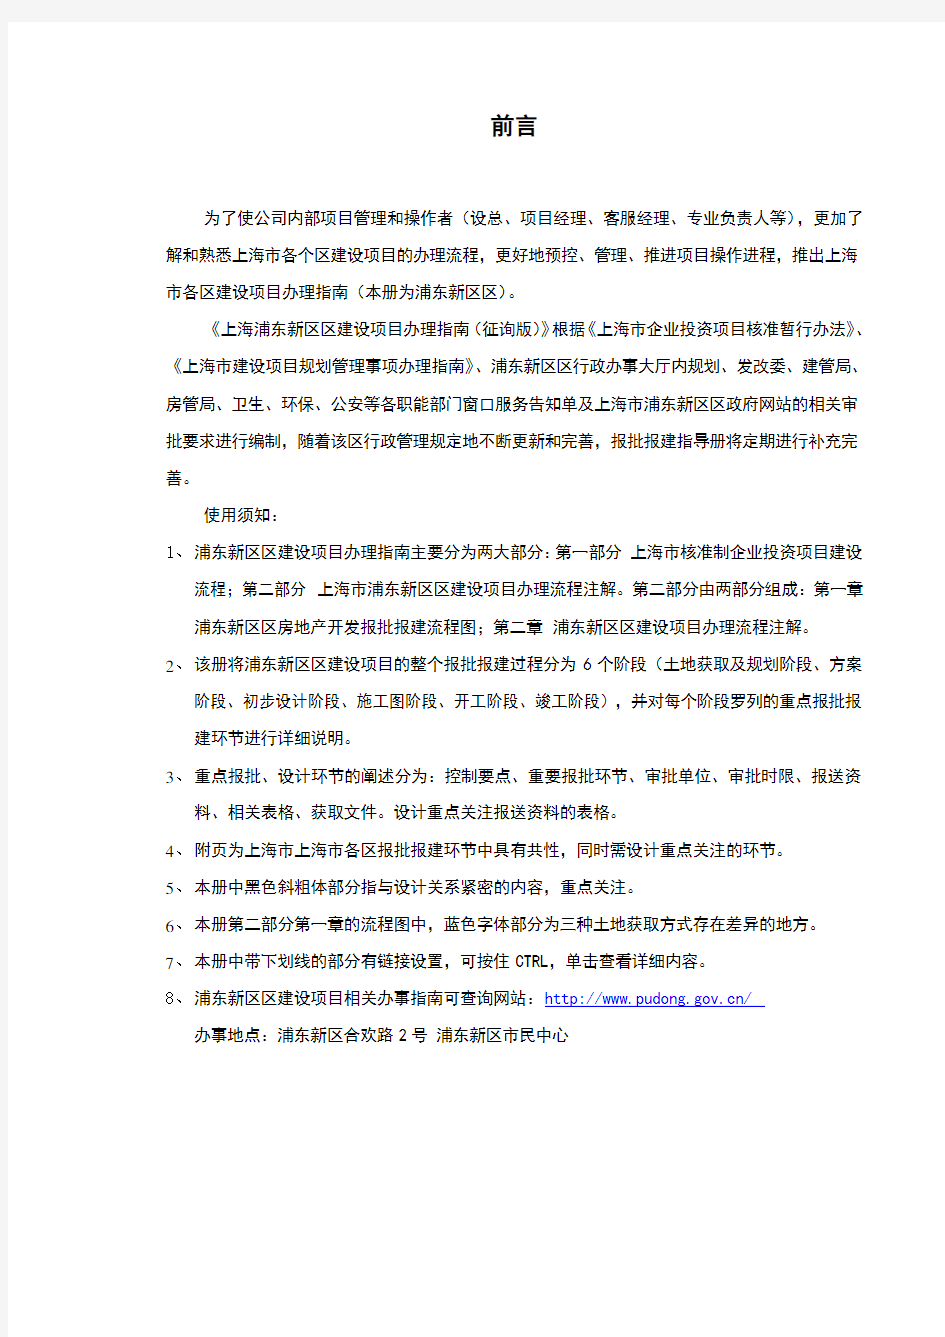 上海市工程建设项目审批手续办理章程